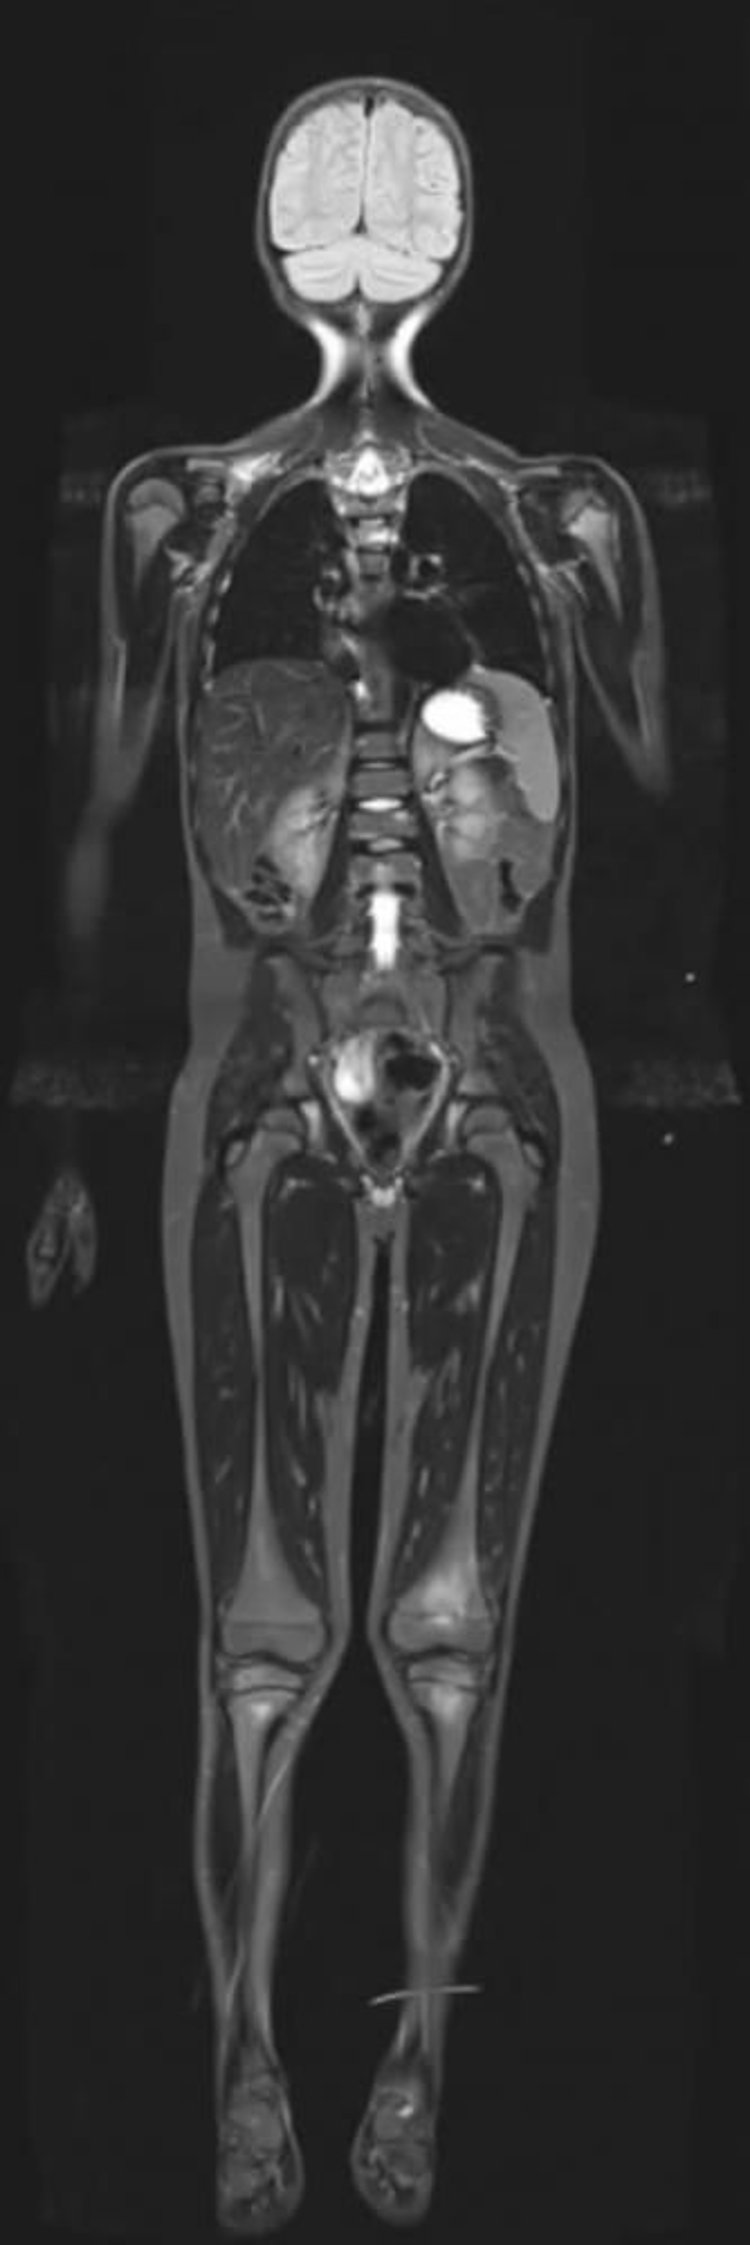 IRM de récupération d’inversion courte T1 (STIR, Short T1 Inversion Recovery MRI)